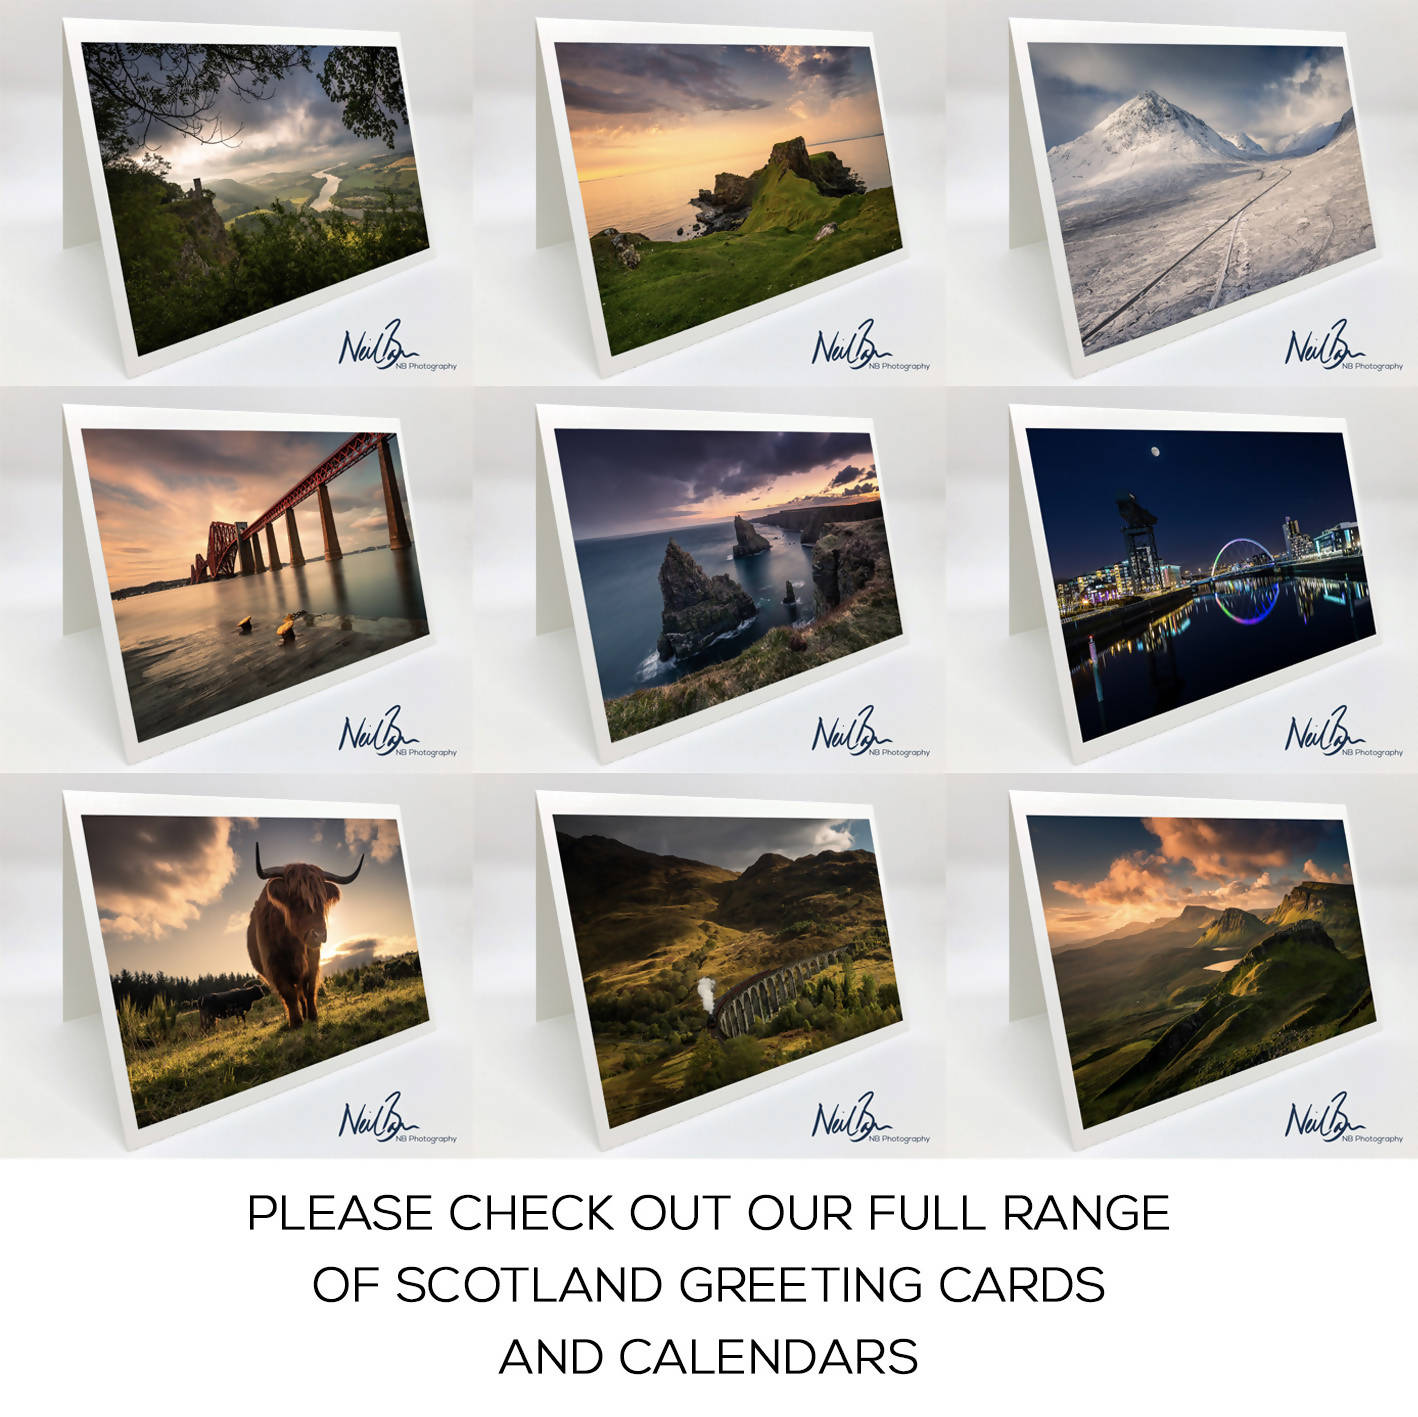 Cuillins & Elgol, Isle of Skye - Scotland Greeting Card - Blank Inside